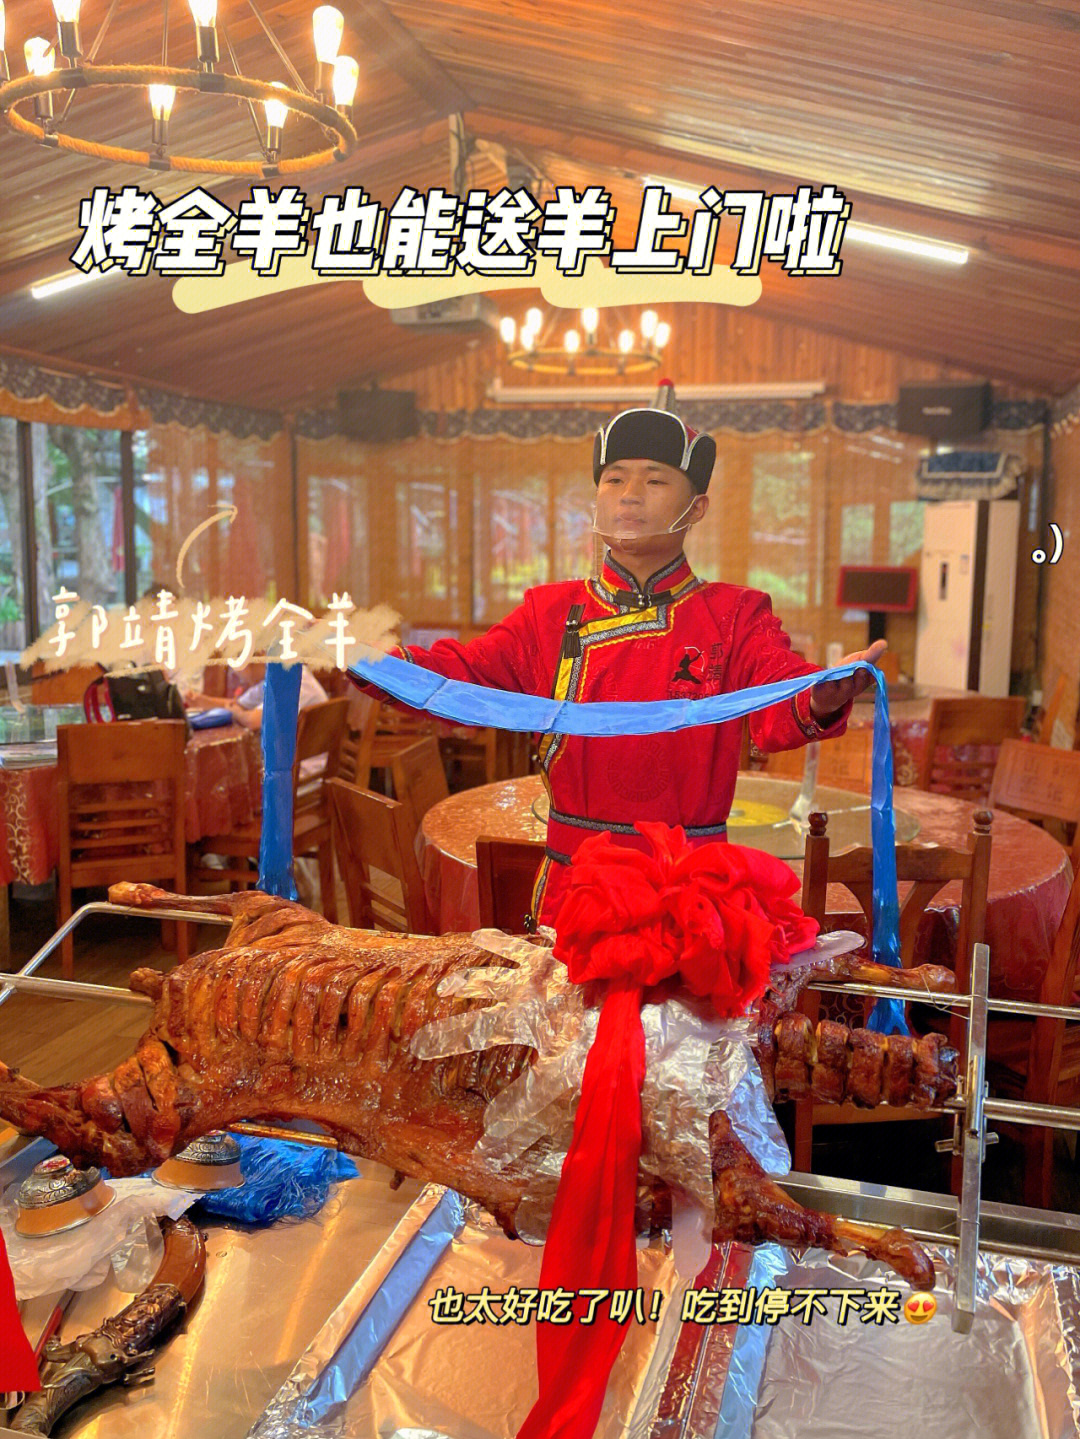 服务员也穿着蒙古族传统服饰,仪式感满满～·羊肉很好吃97